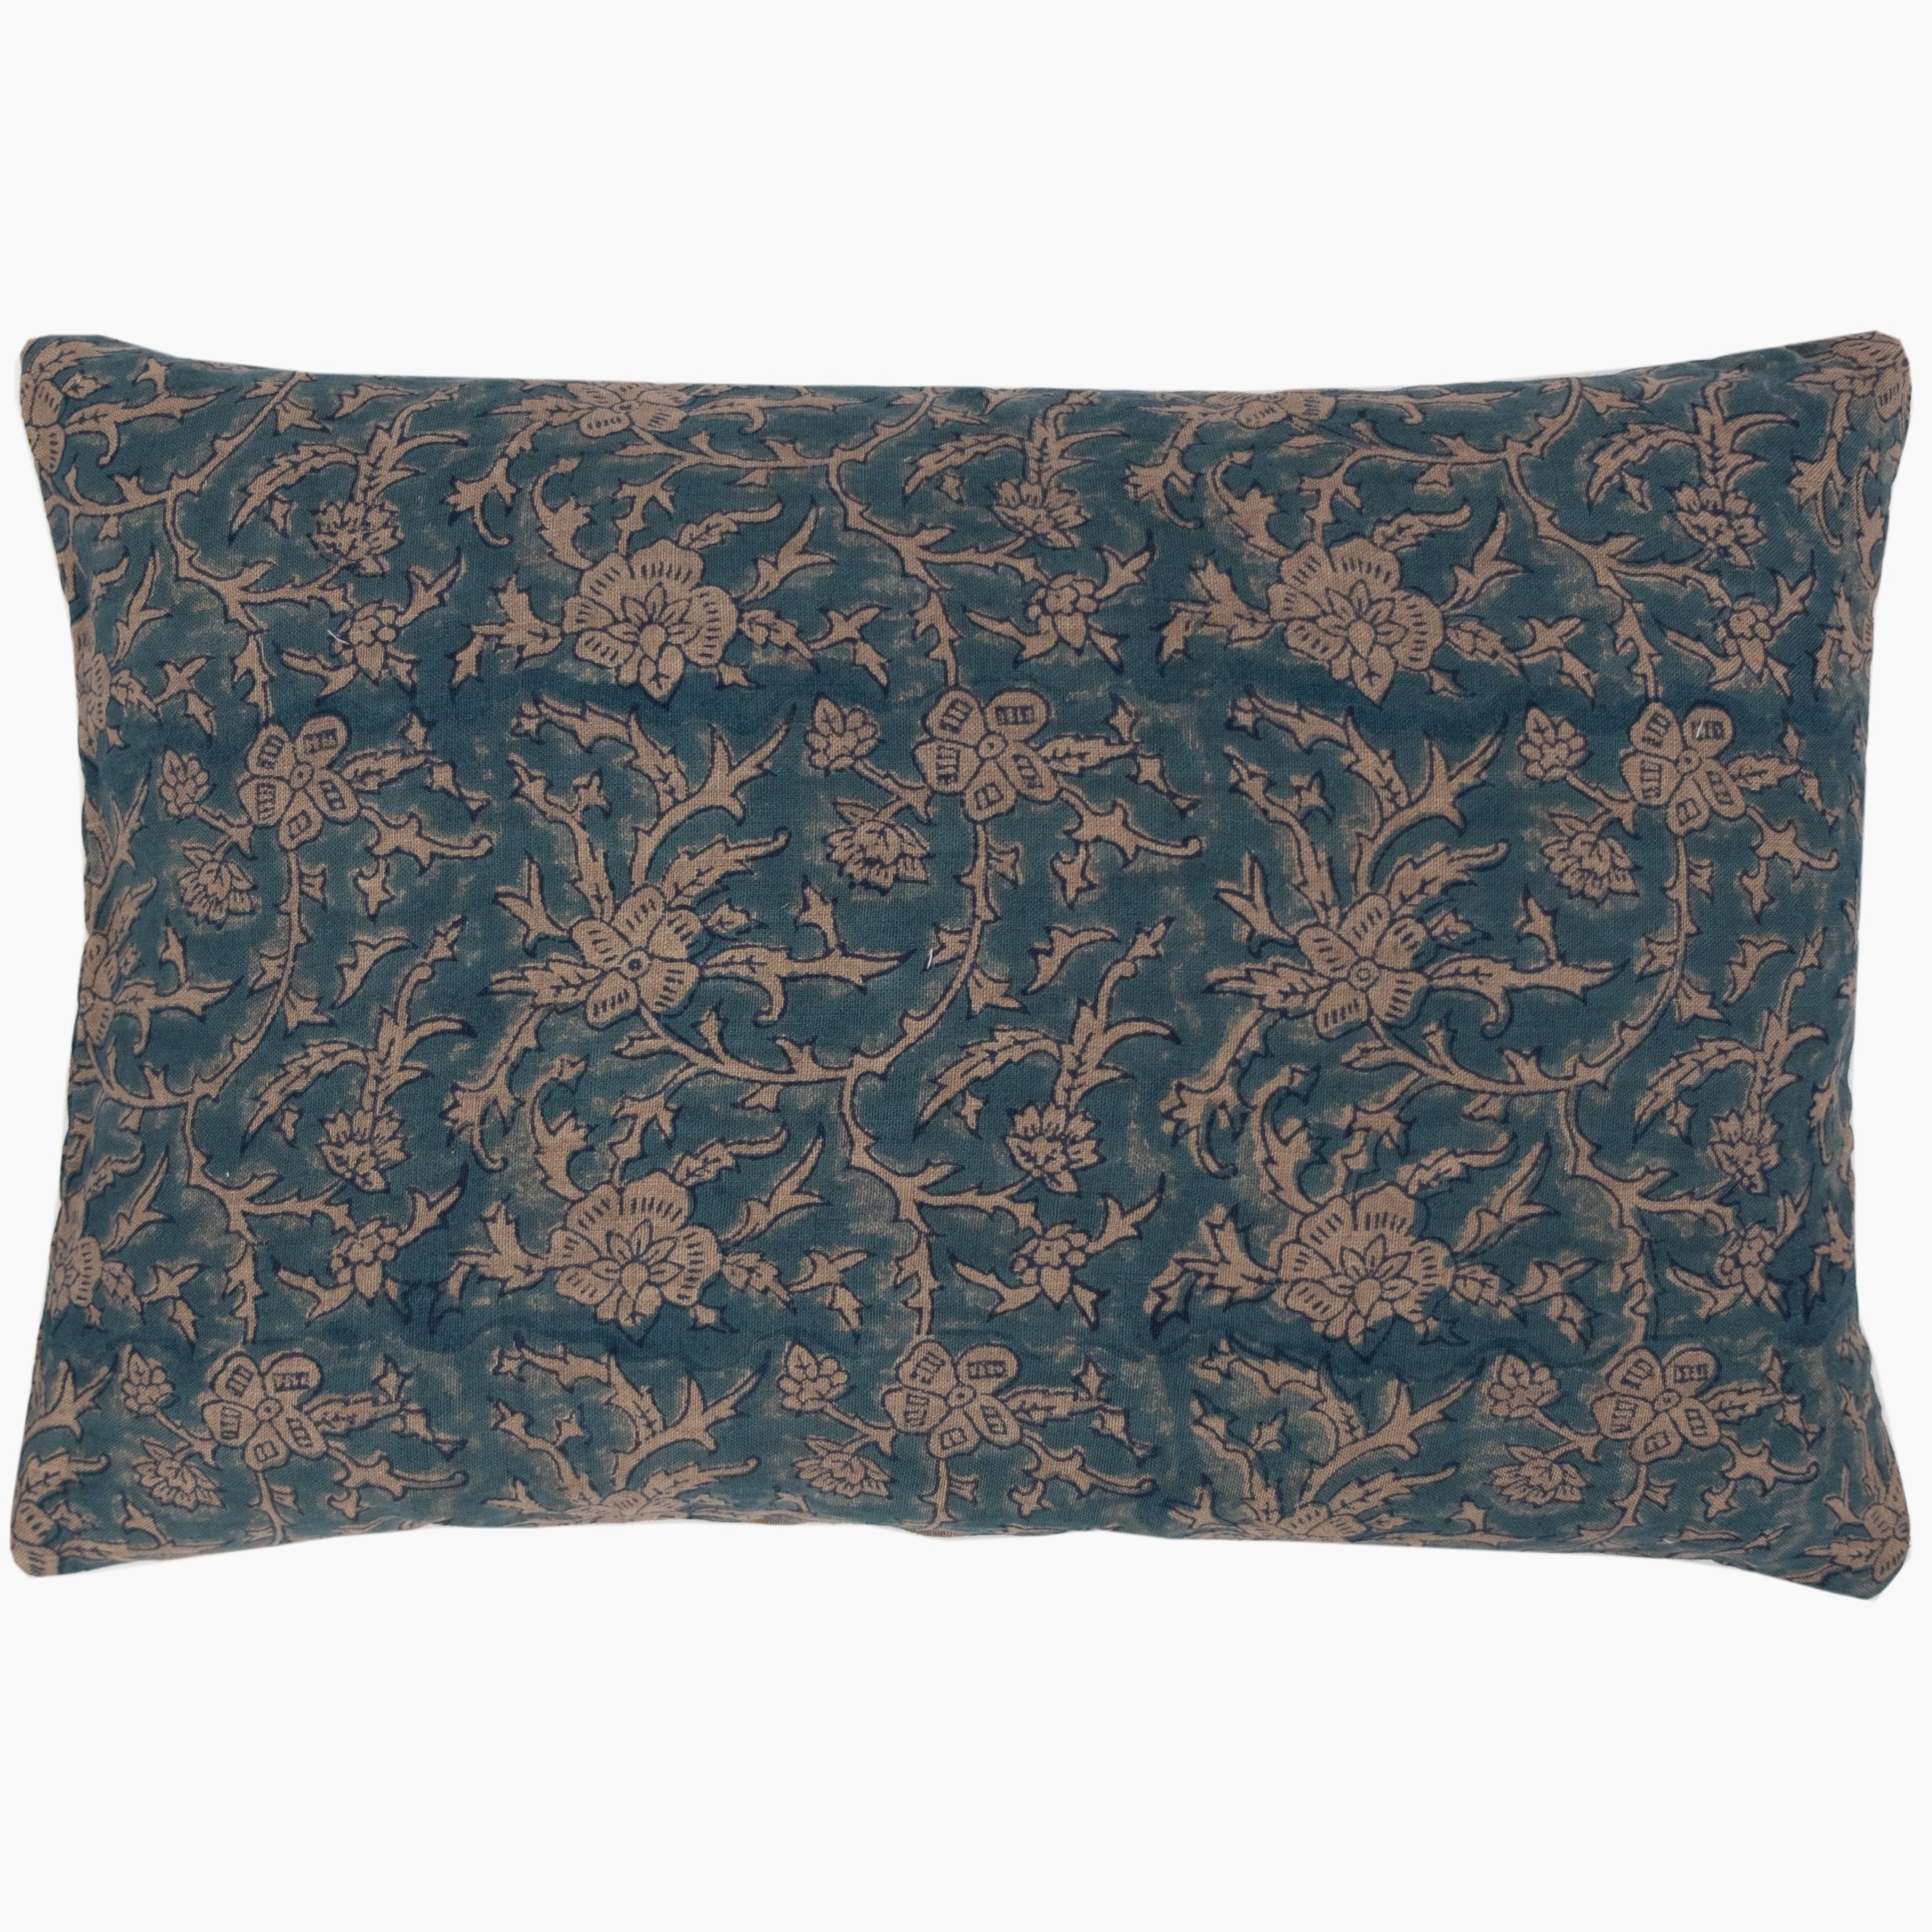 Brittany Blue Tan Linen Pillow